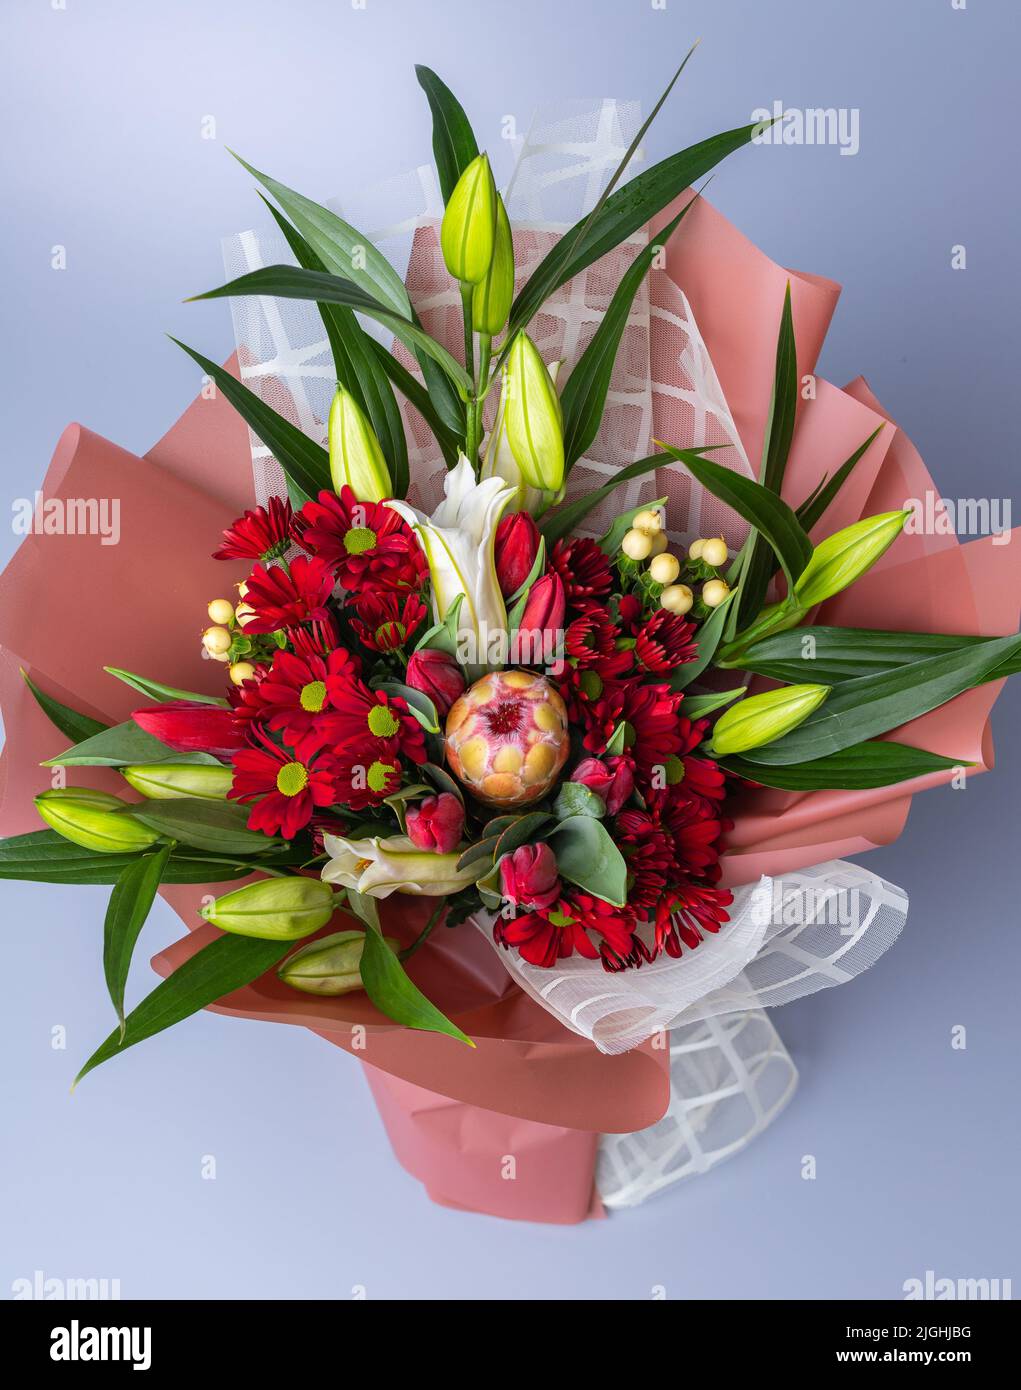 Draufsicht auf einen Blumenstrauß, der in einer weißen und rosa Verpackung verpackt ist, steht auf blauem Hintergrund. Festlich gepackter Bukett mit roten Chrysanthemen und Stockfoto